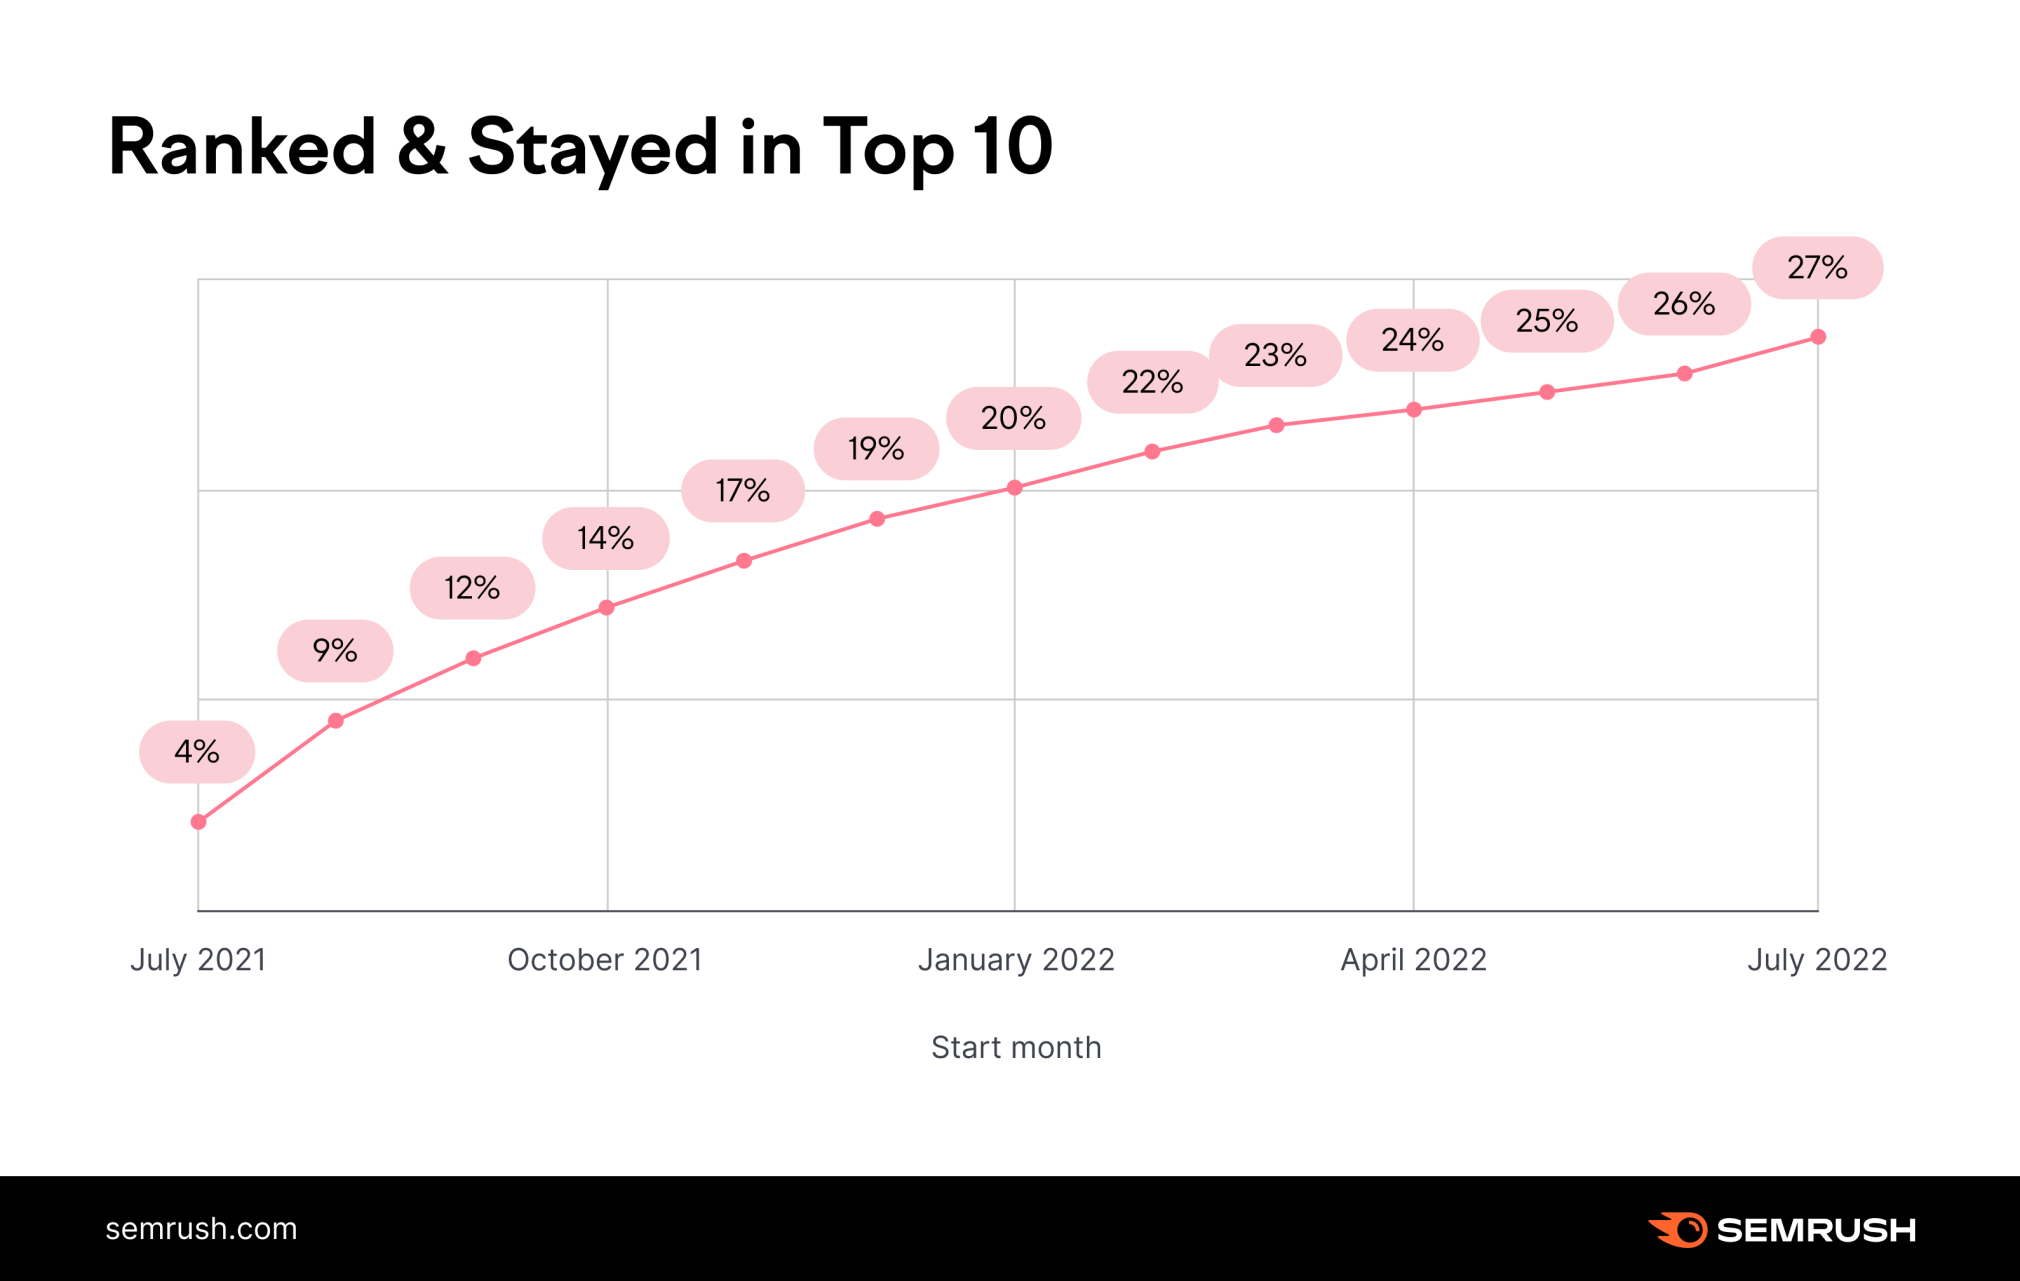 این نمودار از مطالعه Semrush تعداد دامنه هایی را نشان می دهد که در طول یک سال در 10 موقعیت برتر باقی مانده اند.